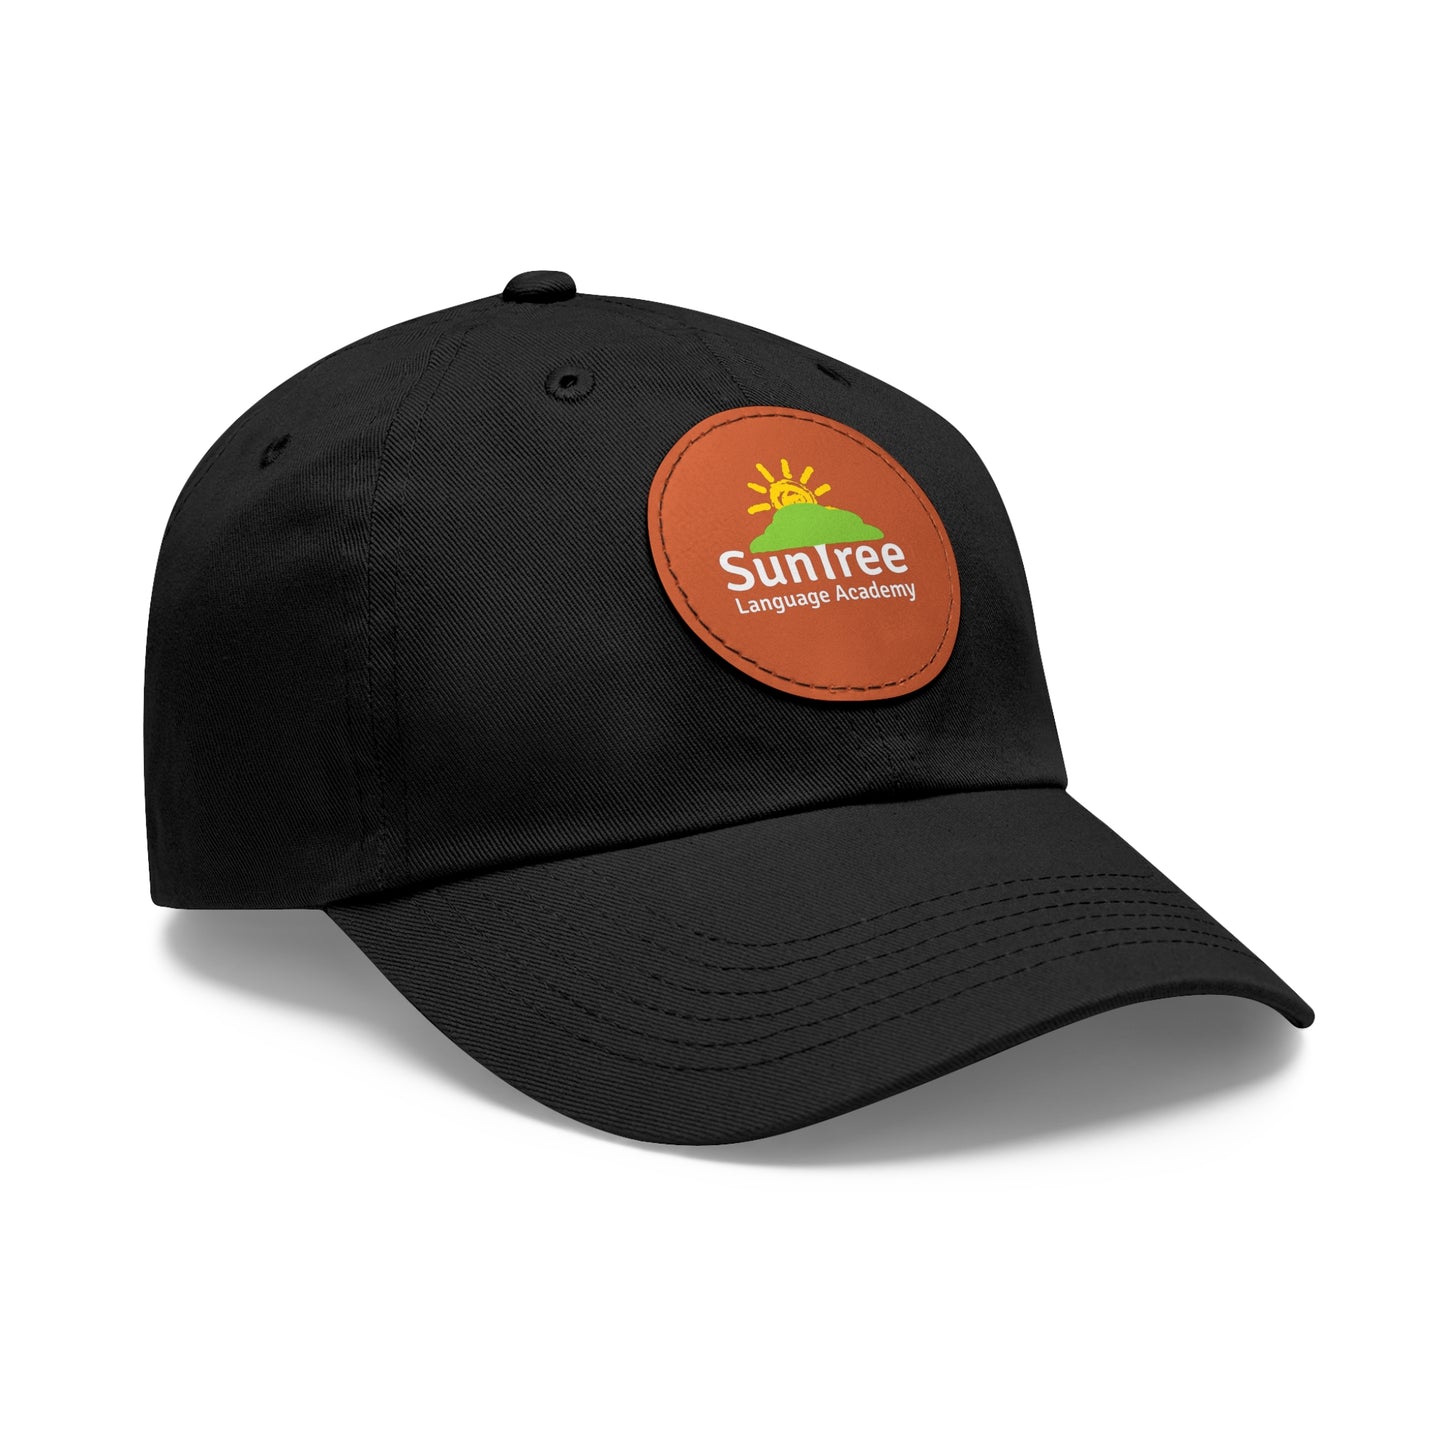 Suntree baseball cap